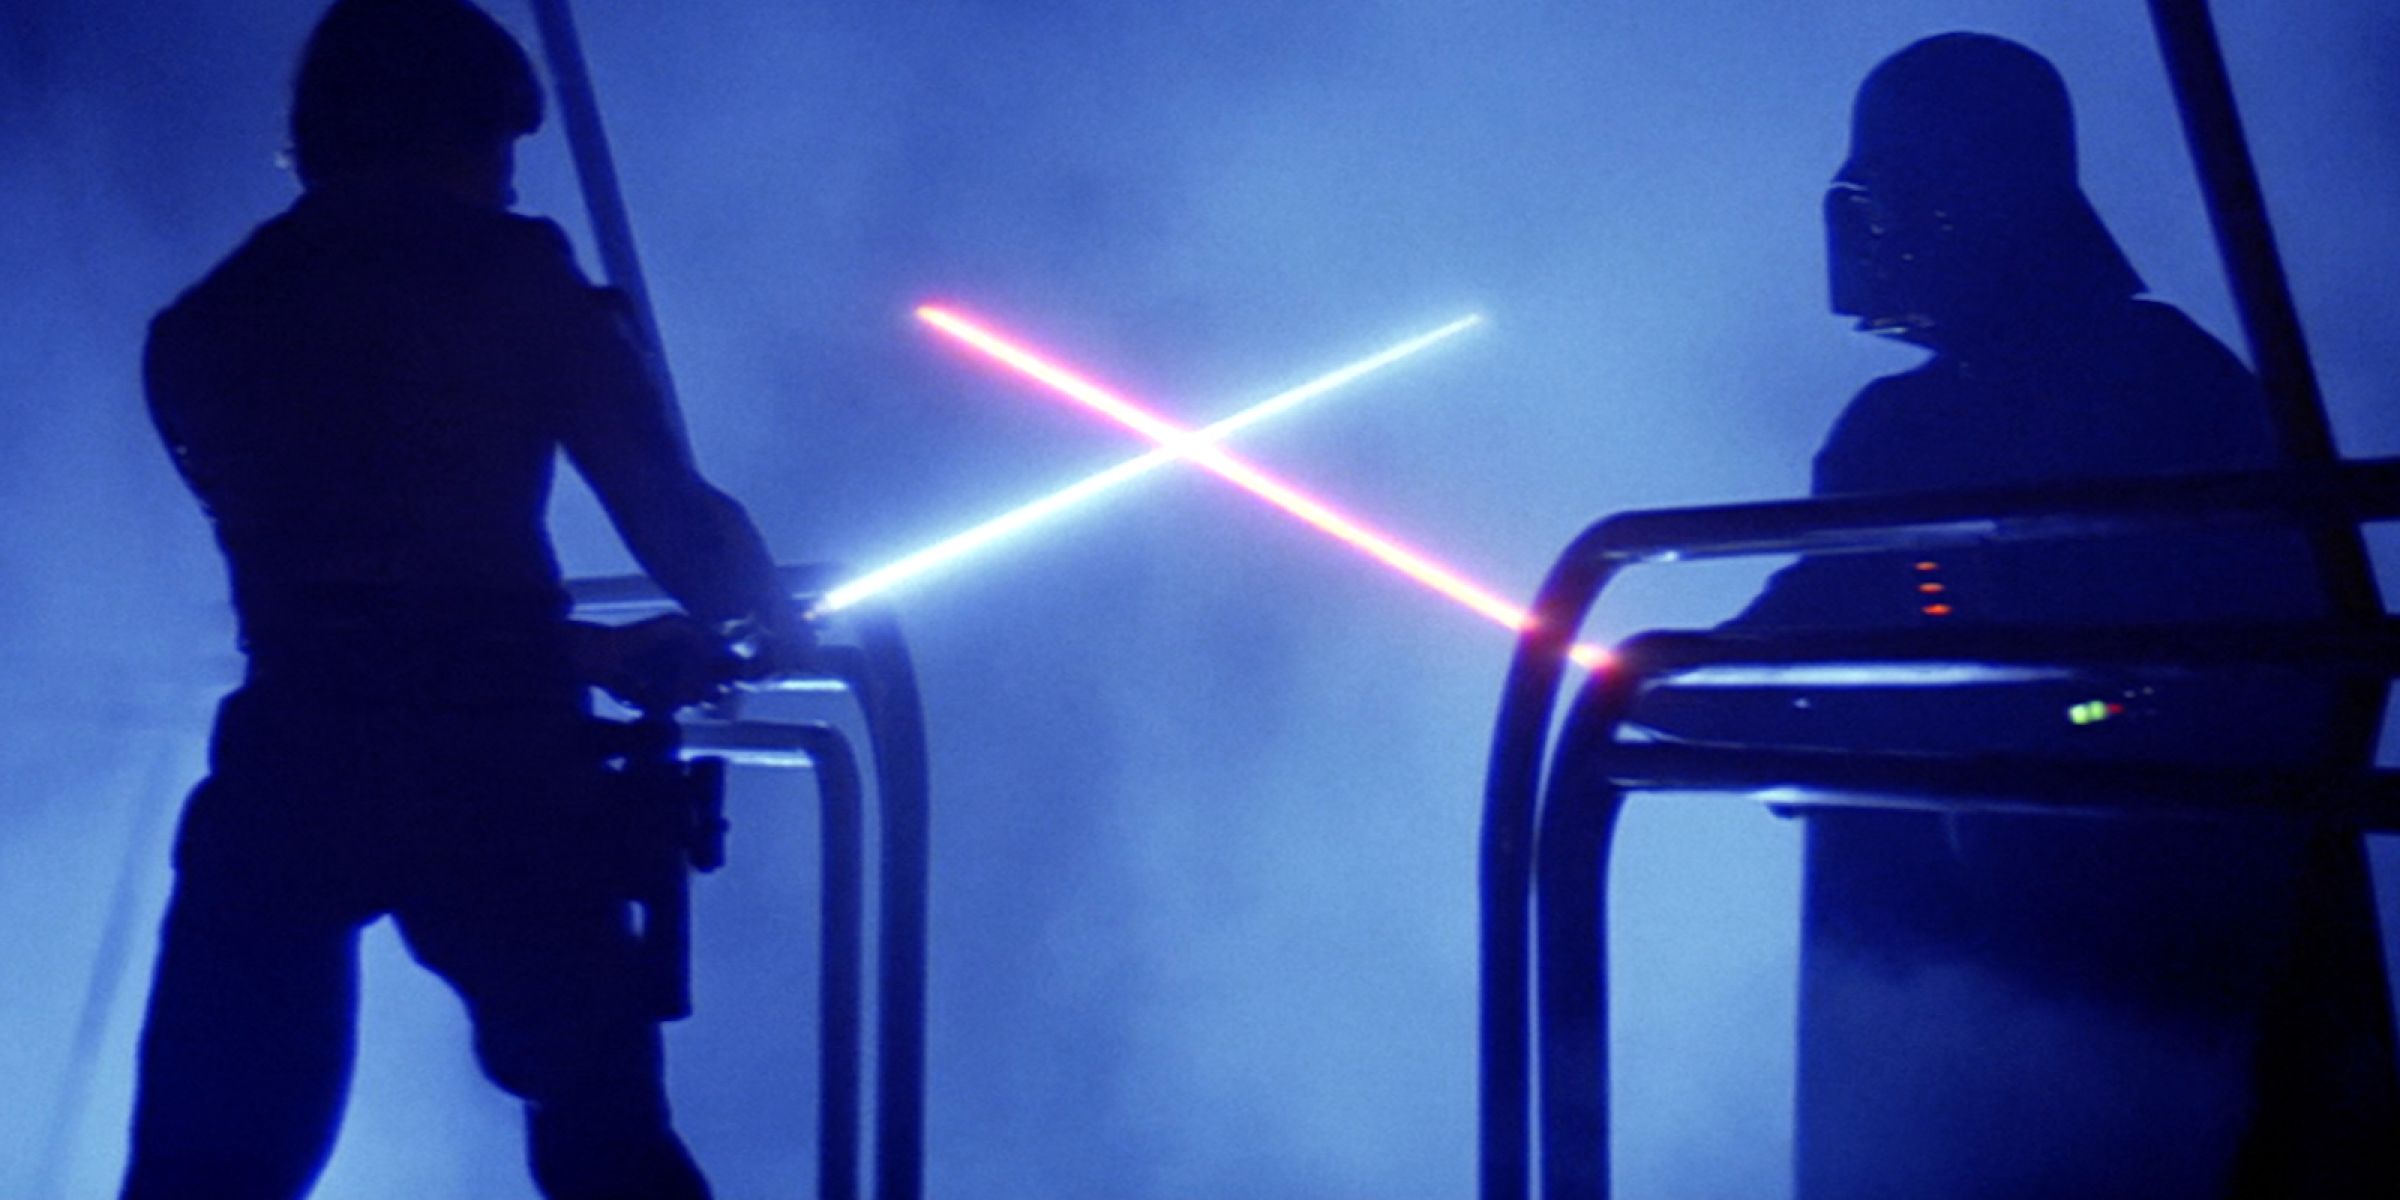 Luke Skywalker's Lightsaber Duel With Darth Vader from Star Wars Episode V The Empire Strikes Back